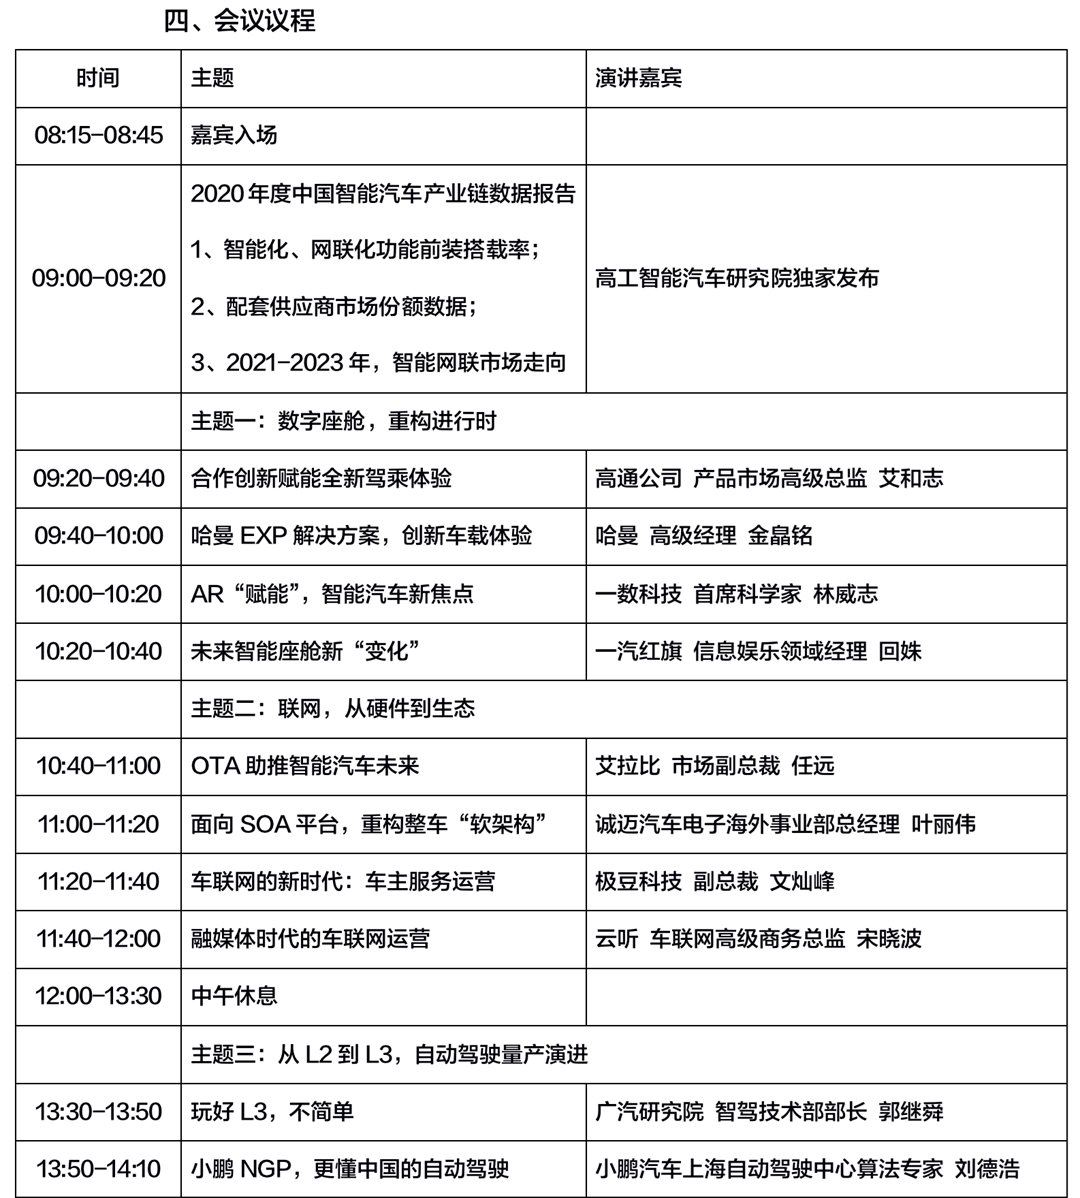 4.6:4月19日（上海）2021年度第三届高工智能汽车市场峰会_02.png